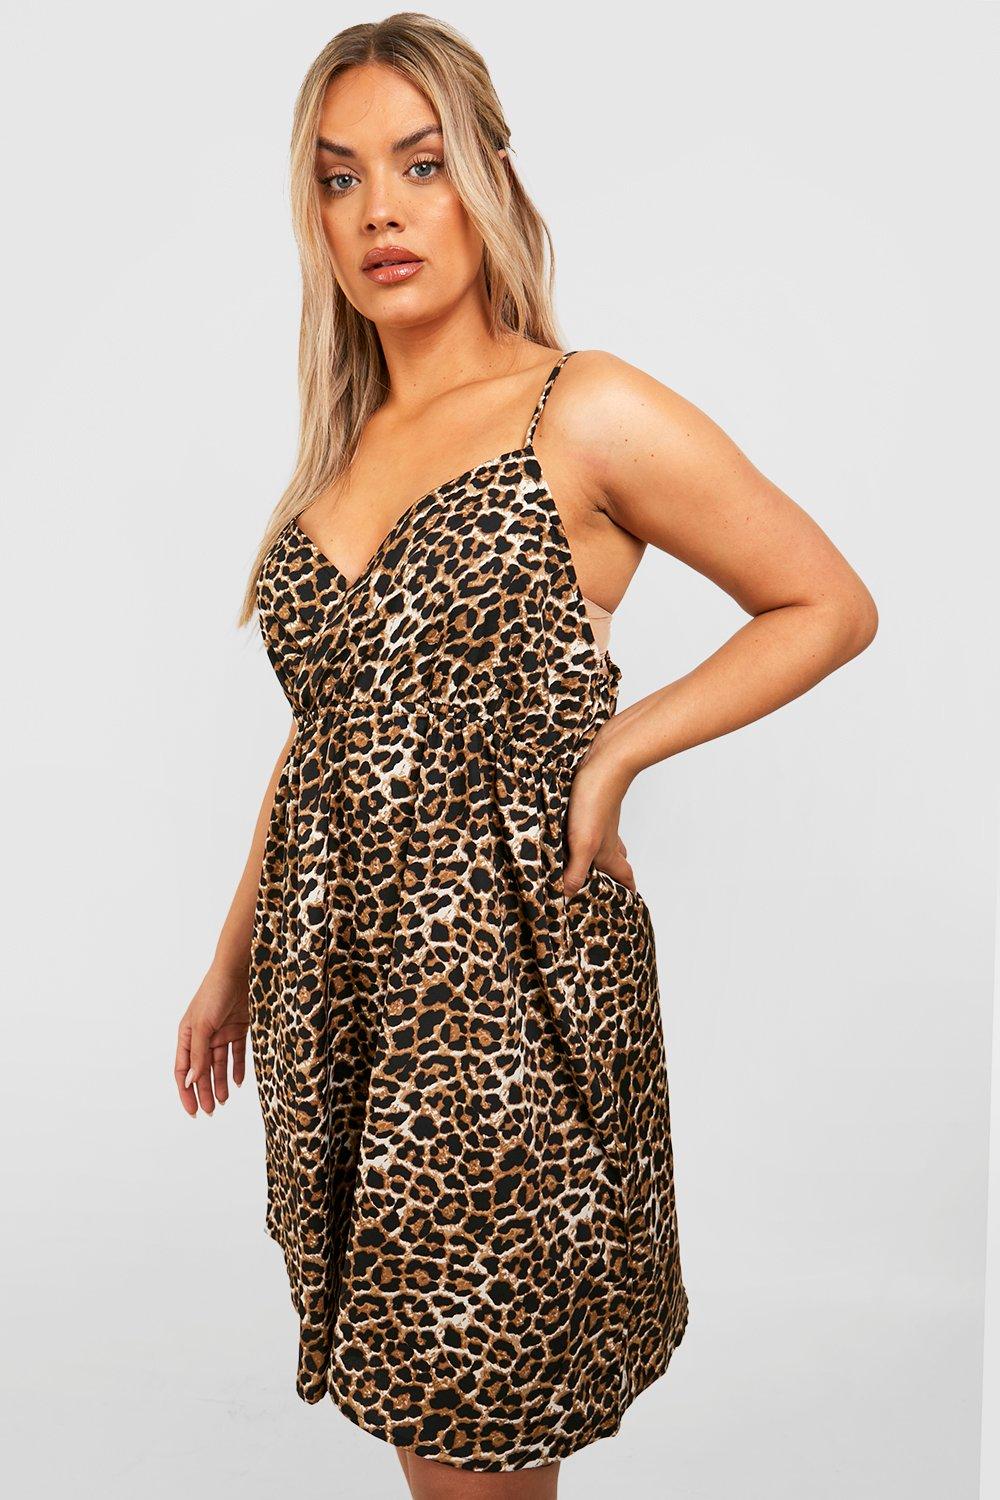 Сарафан с леопардовым платьем plus Boohoo, леопардовый сарафан boohoo нежно пудровый 40 размер